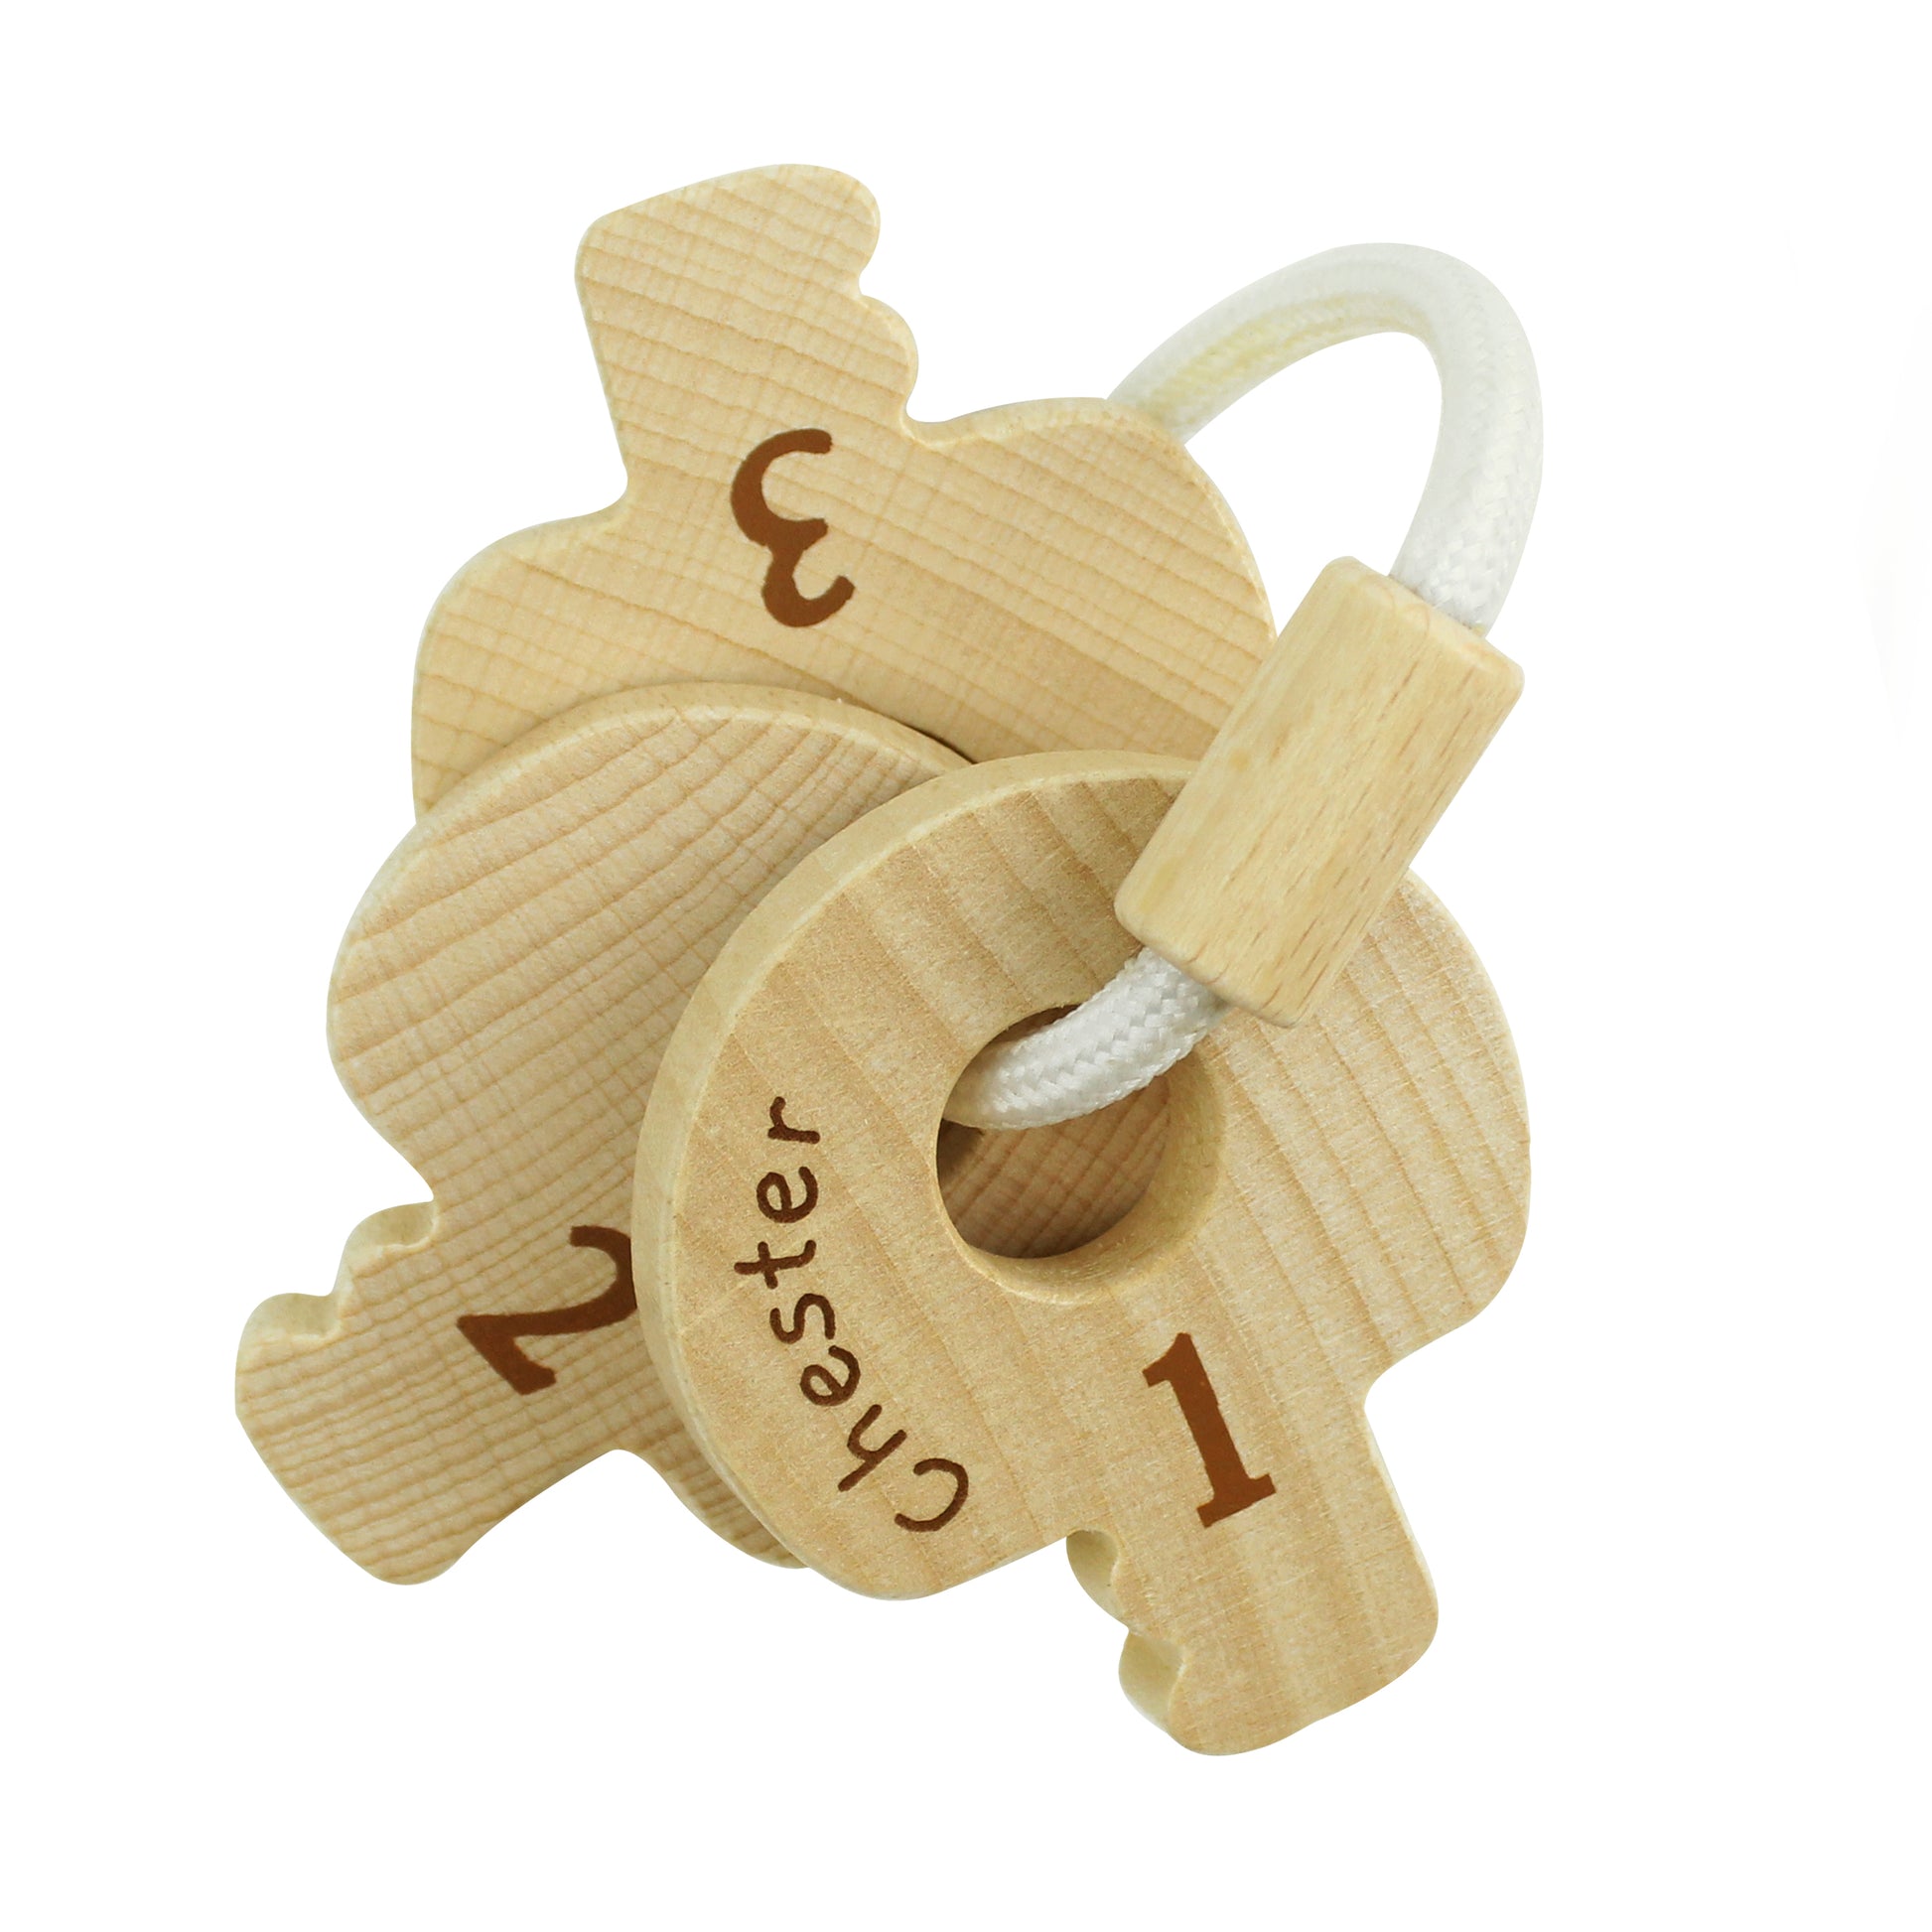 Personalised Beech Baby Keys - Violet Belle Gifts - Personalised Wooden Baby Keys